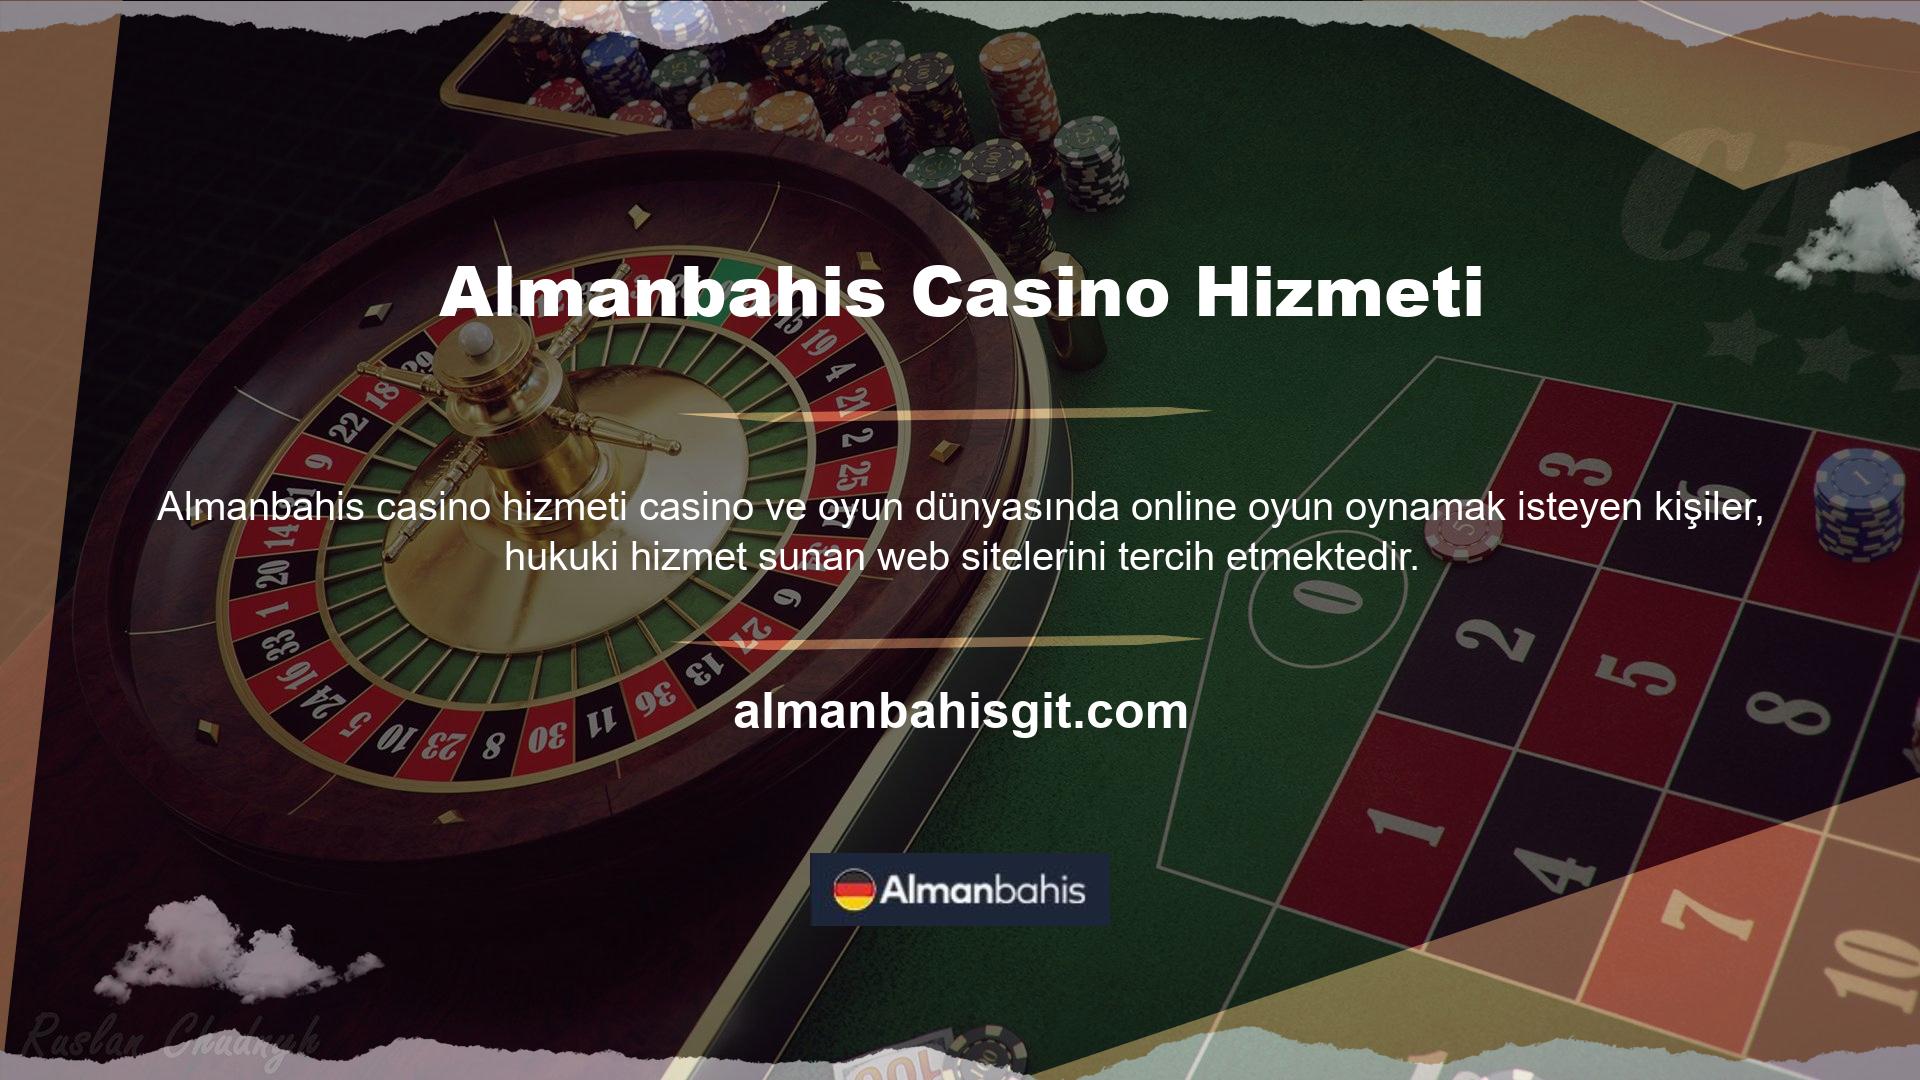 Almanbahis Giriş casino sitesi Avrupa ülkelerinde yasal casino hizmeti veren bir sitedir ancak Türkiye'de bulunmamaktadır